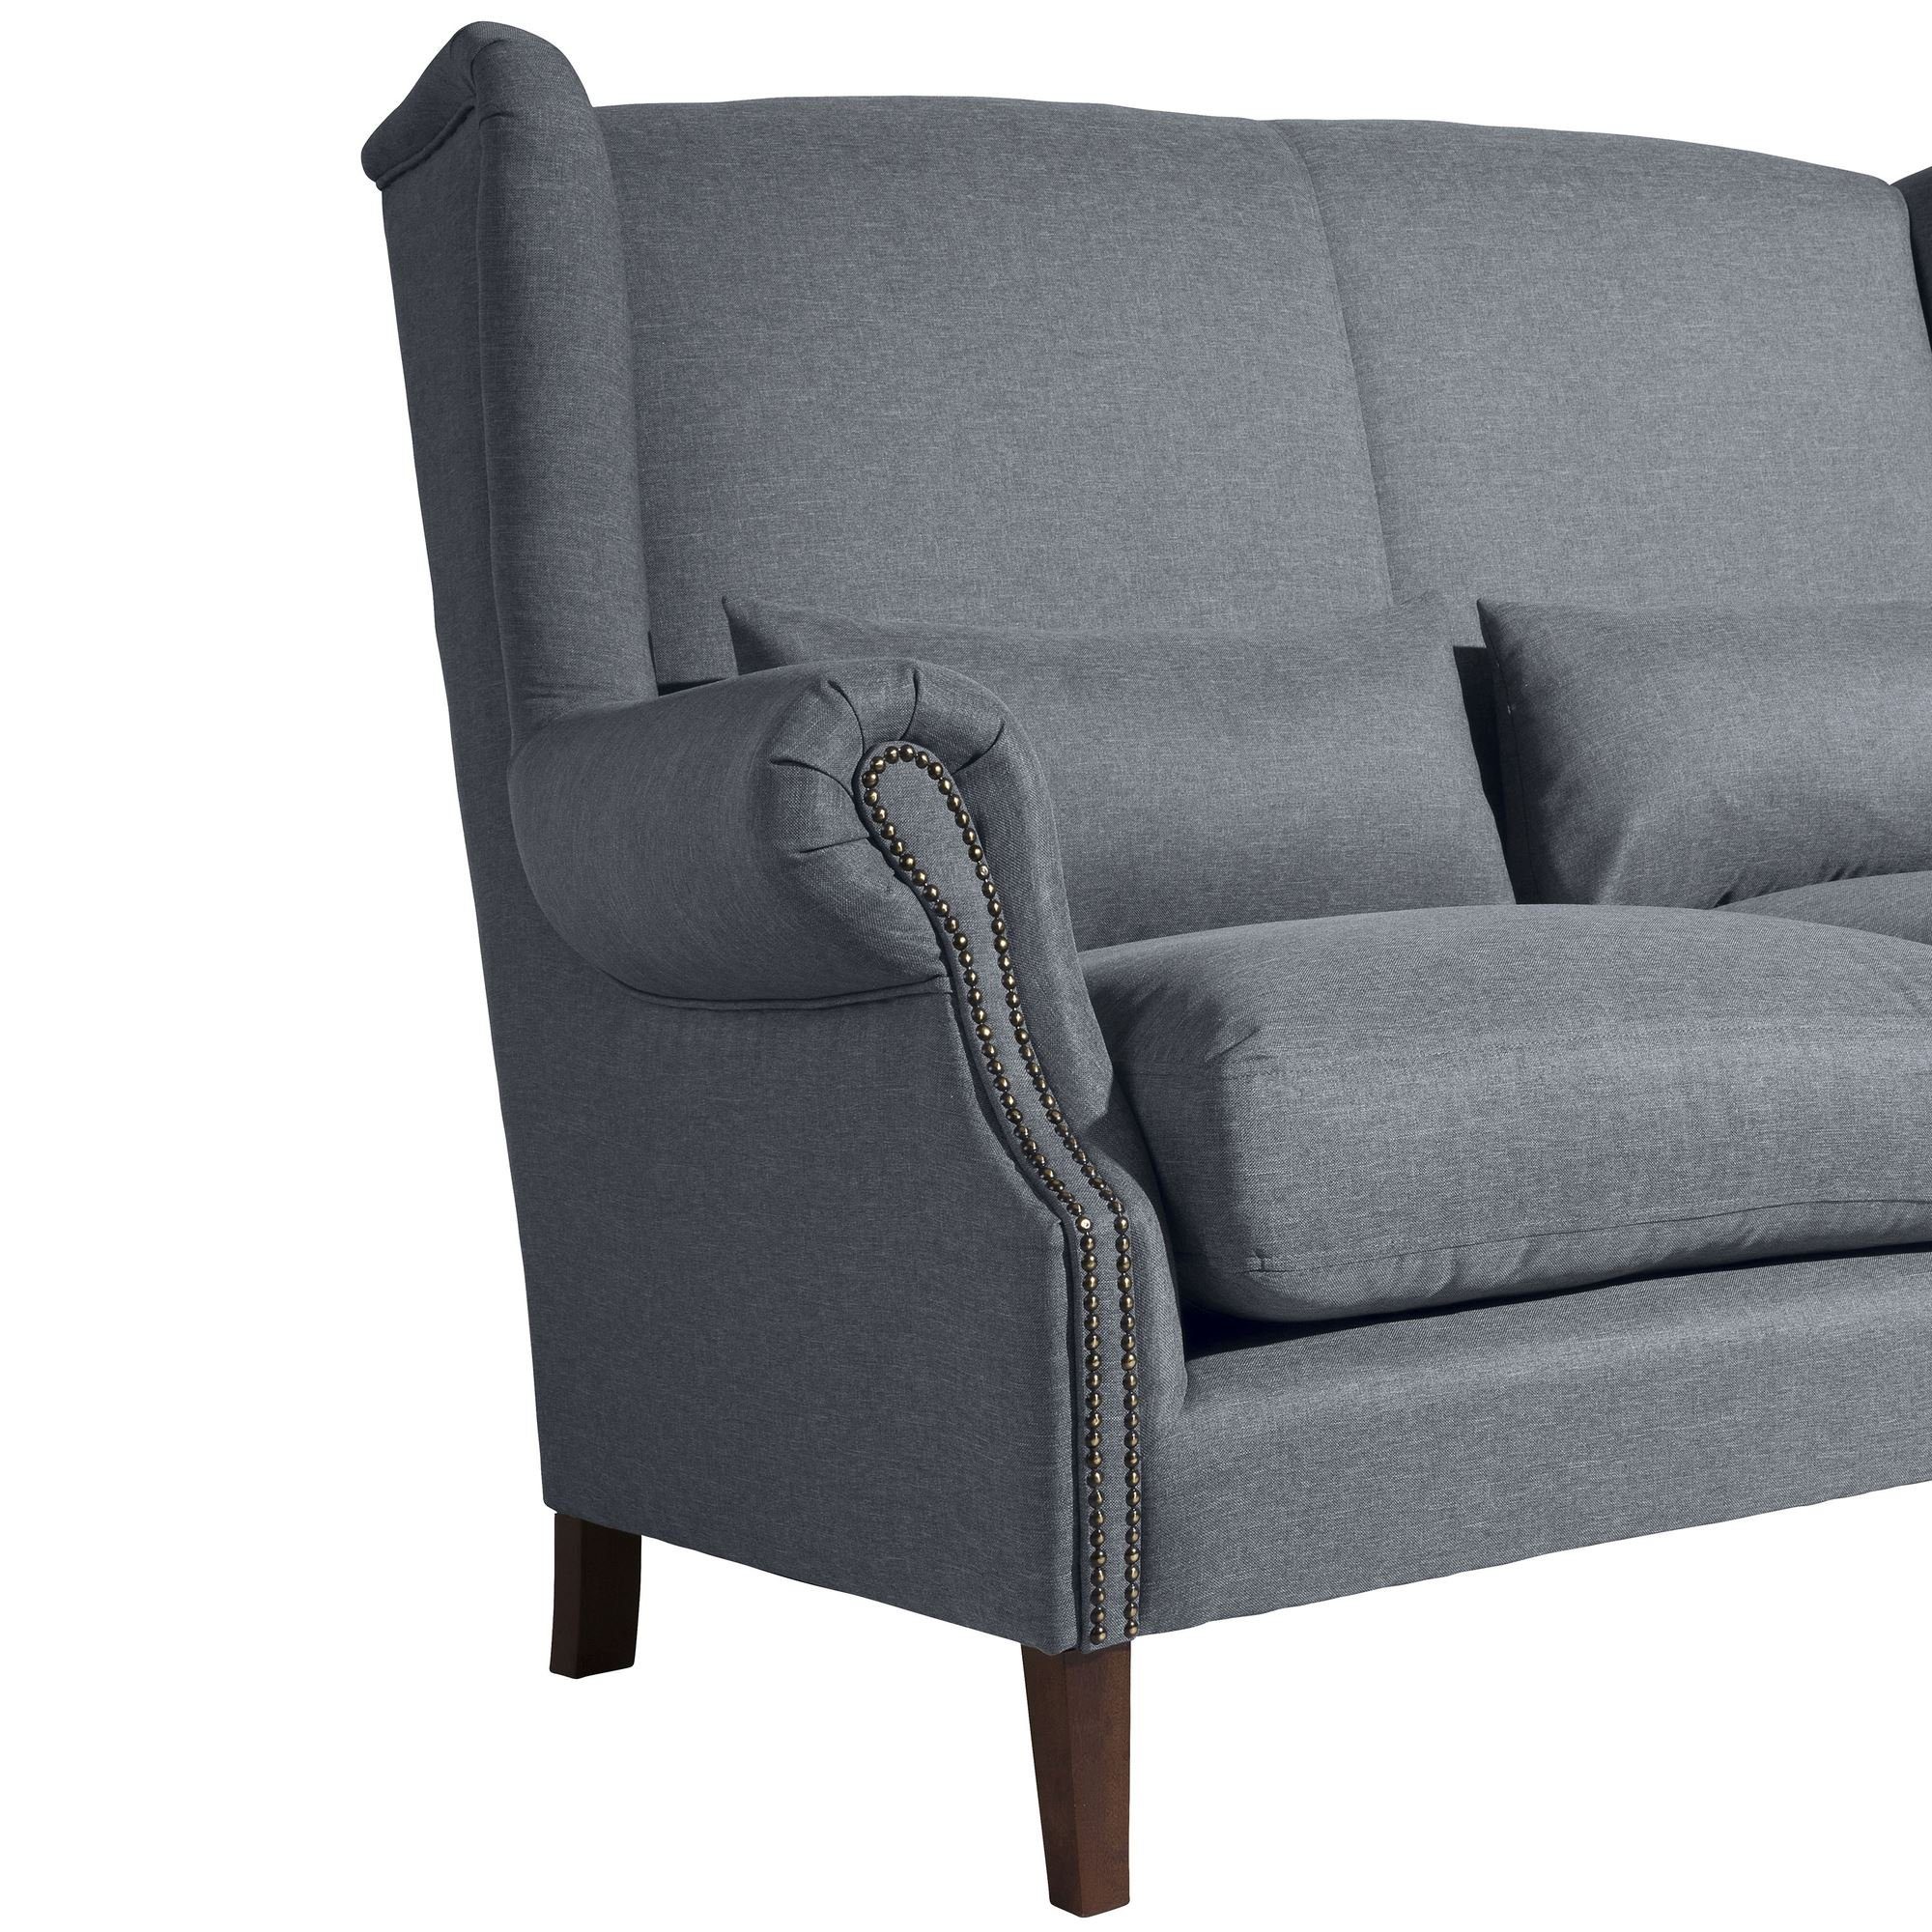 58 aufm Bezug Sitz Buche Sparpreis Kandy 2-Sitzer Sofa Sofa Teile, nussba, inkl. 1 Kessel Flachgewebe verarbeitet,bequemer hochwertig Versand Kostenlosem